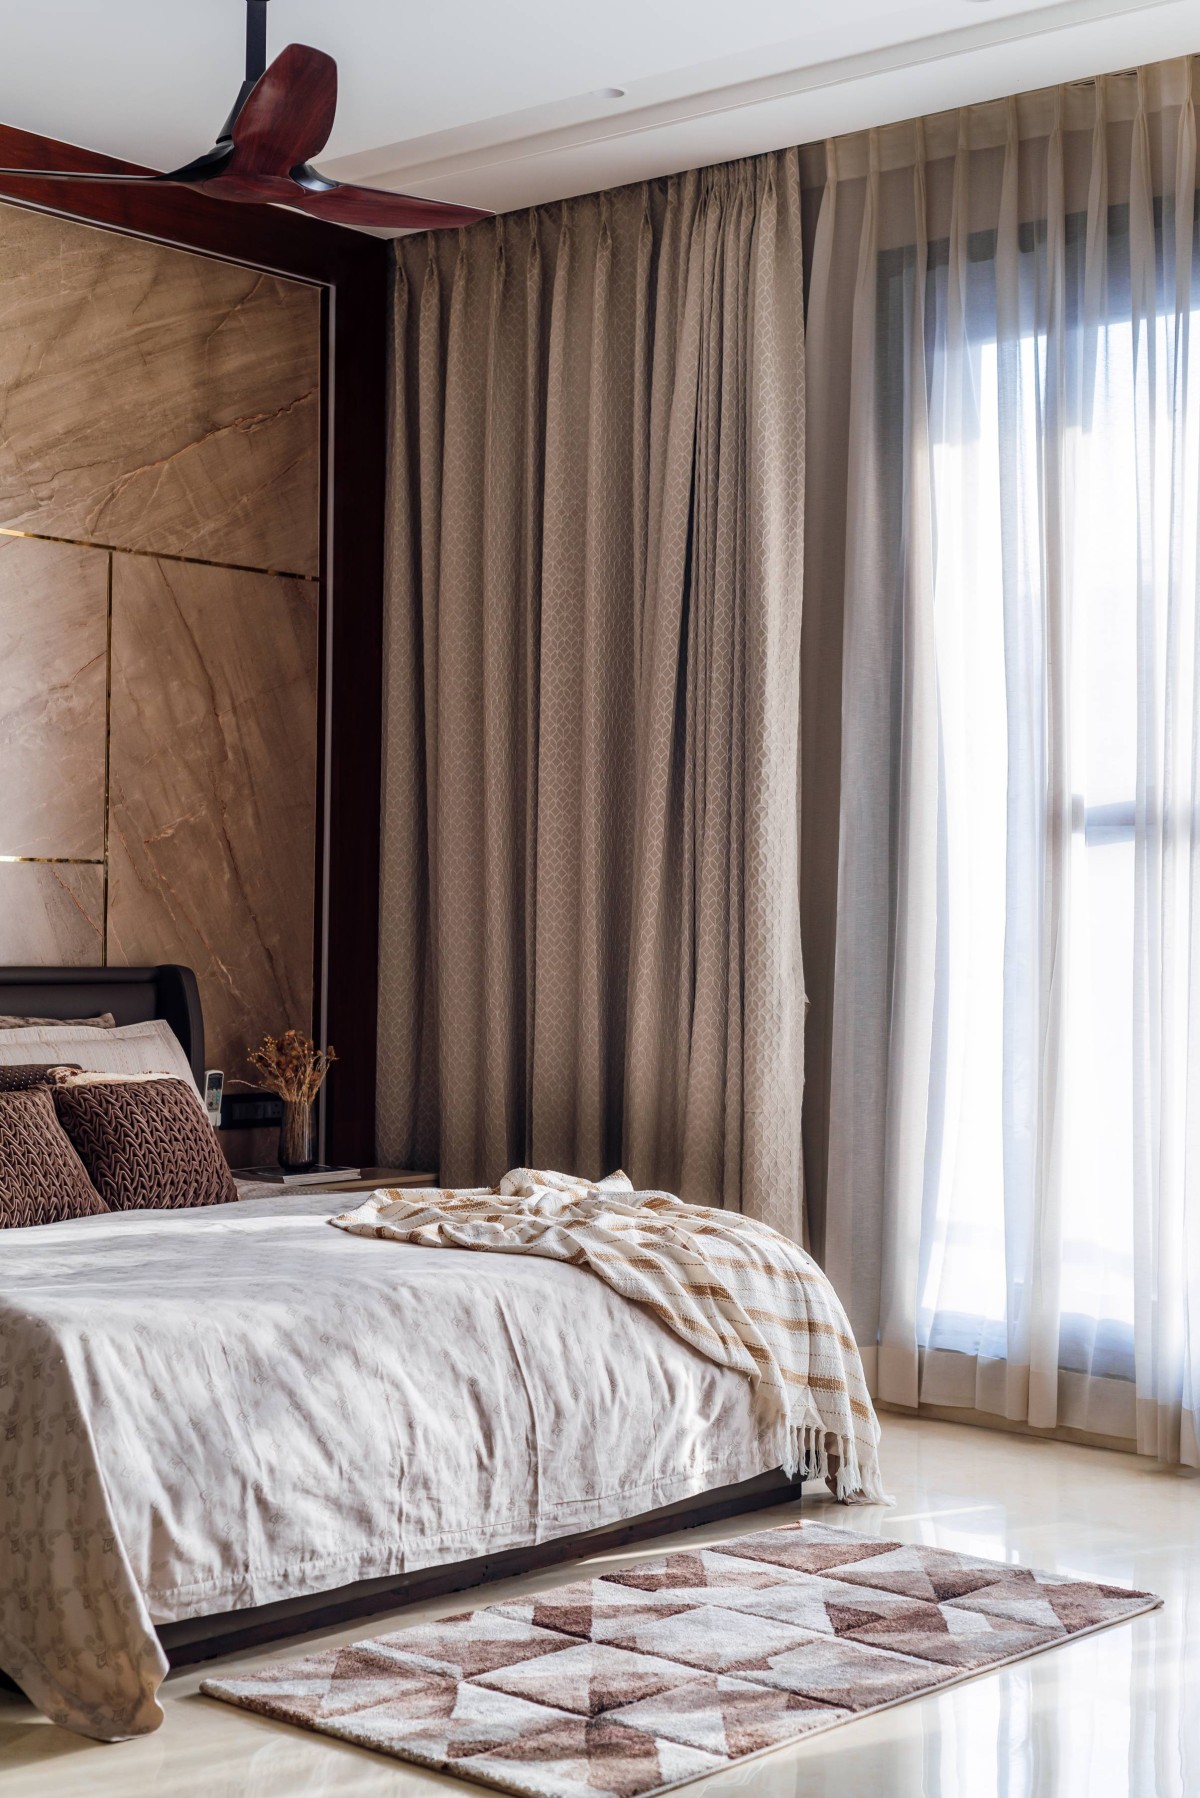 Bedroom of Villa 46 by Hem & Associates